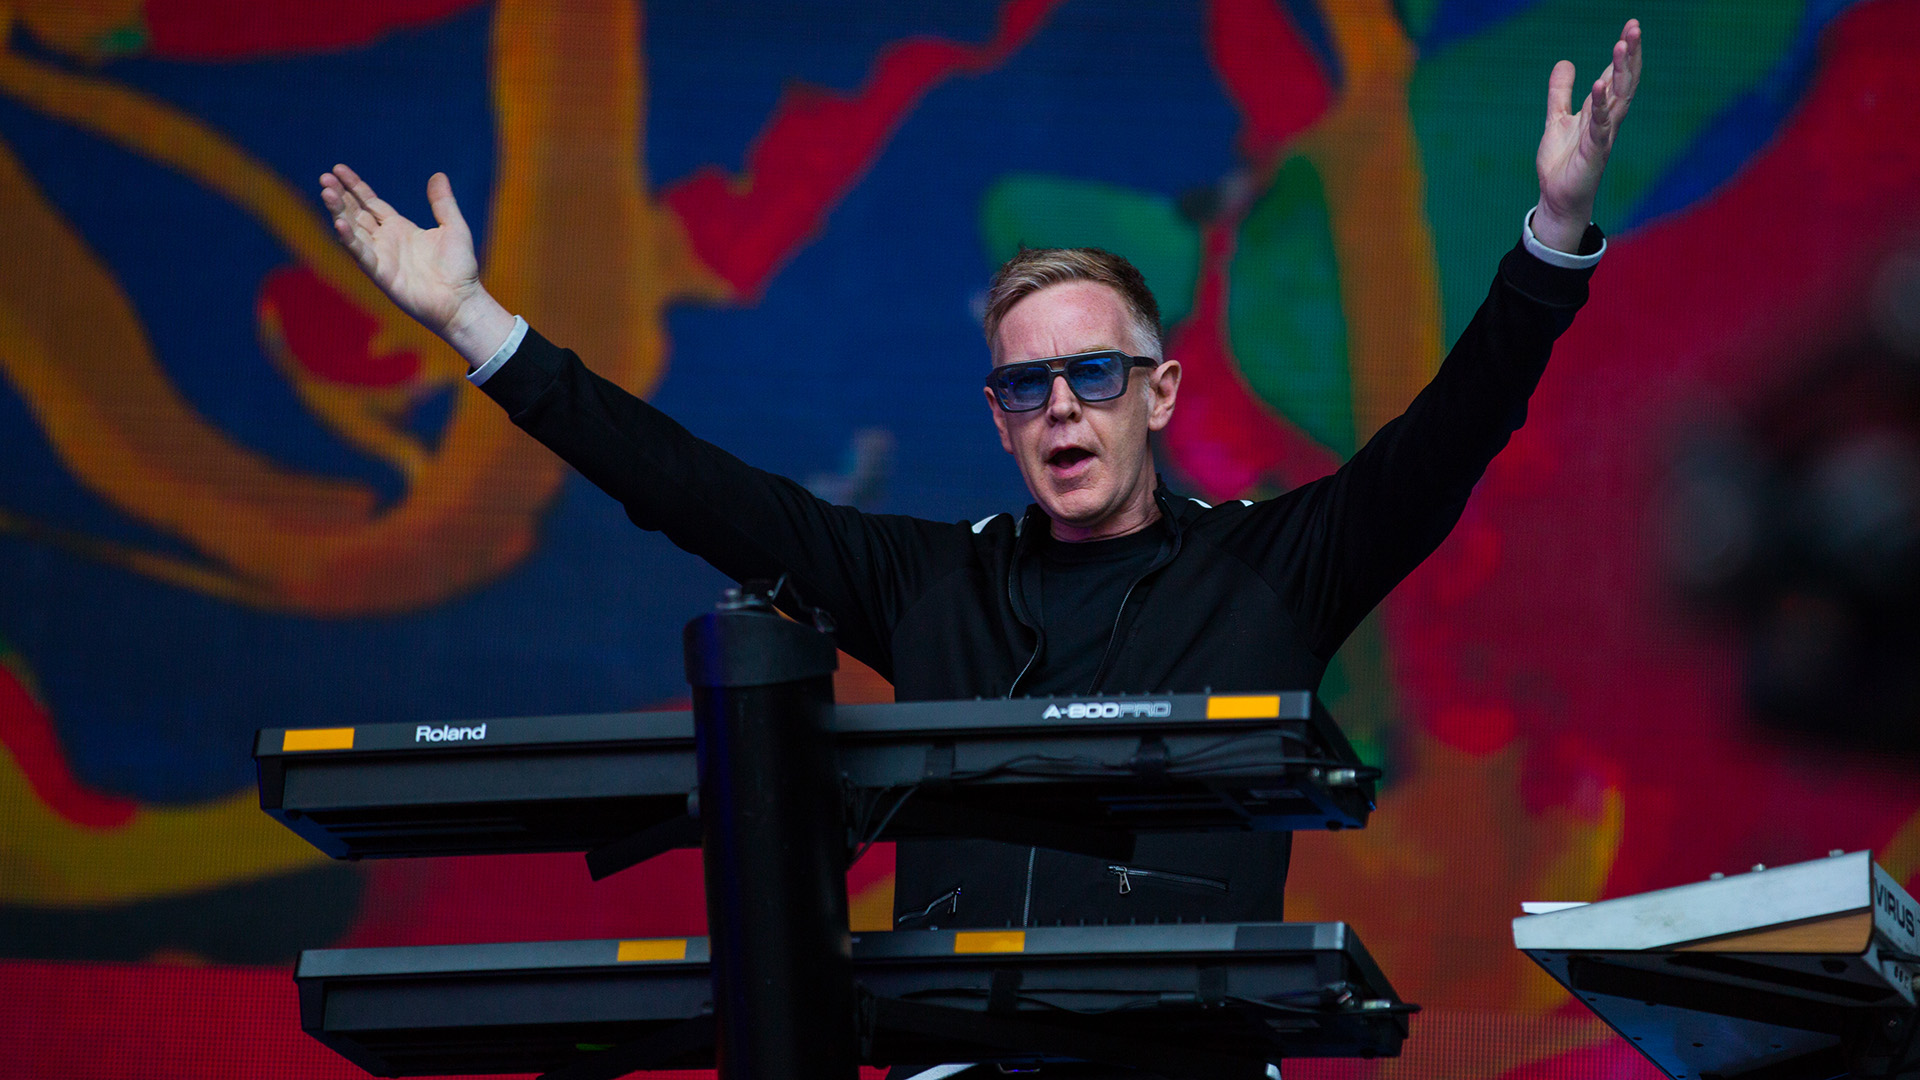 Andrew Flecther, de Depeche Mode, en un concierto en Colonia, Alemania en 2017 (Ant Palmer/Getty Images)